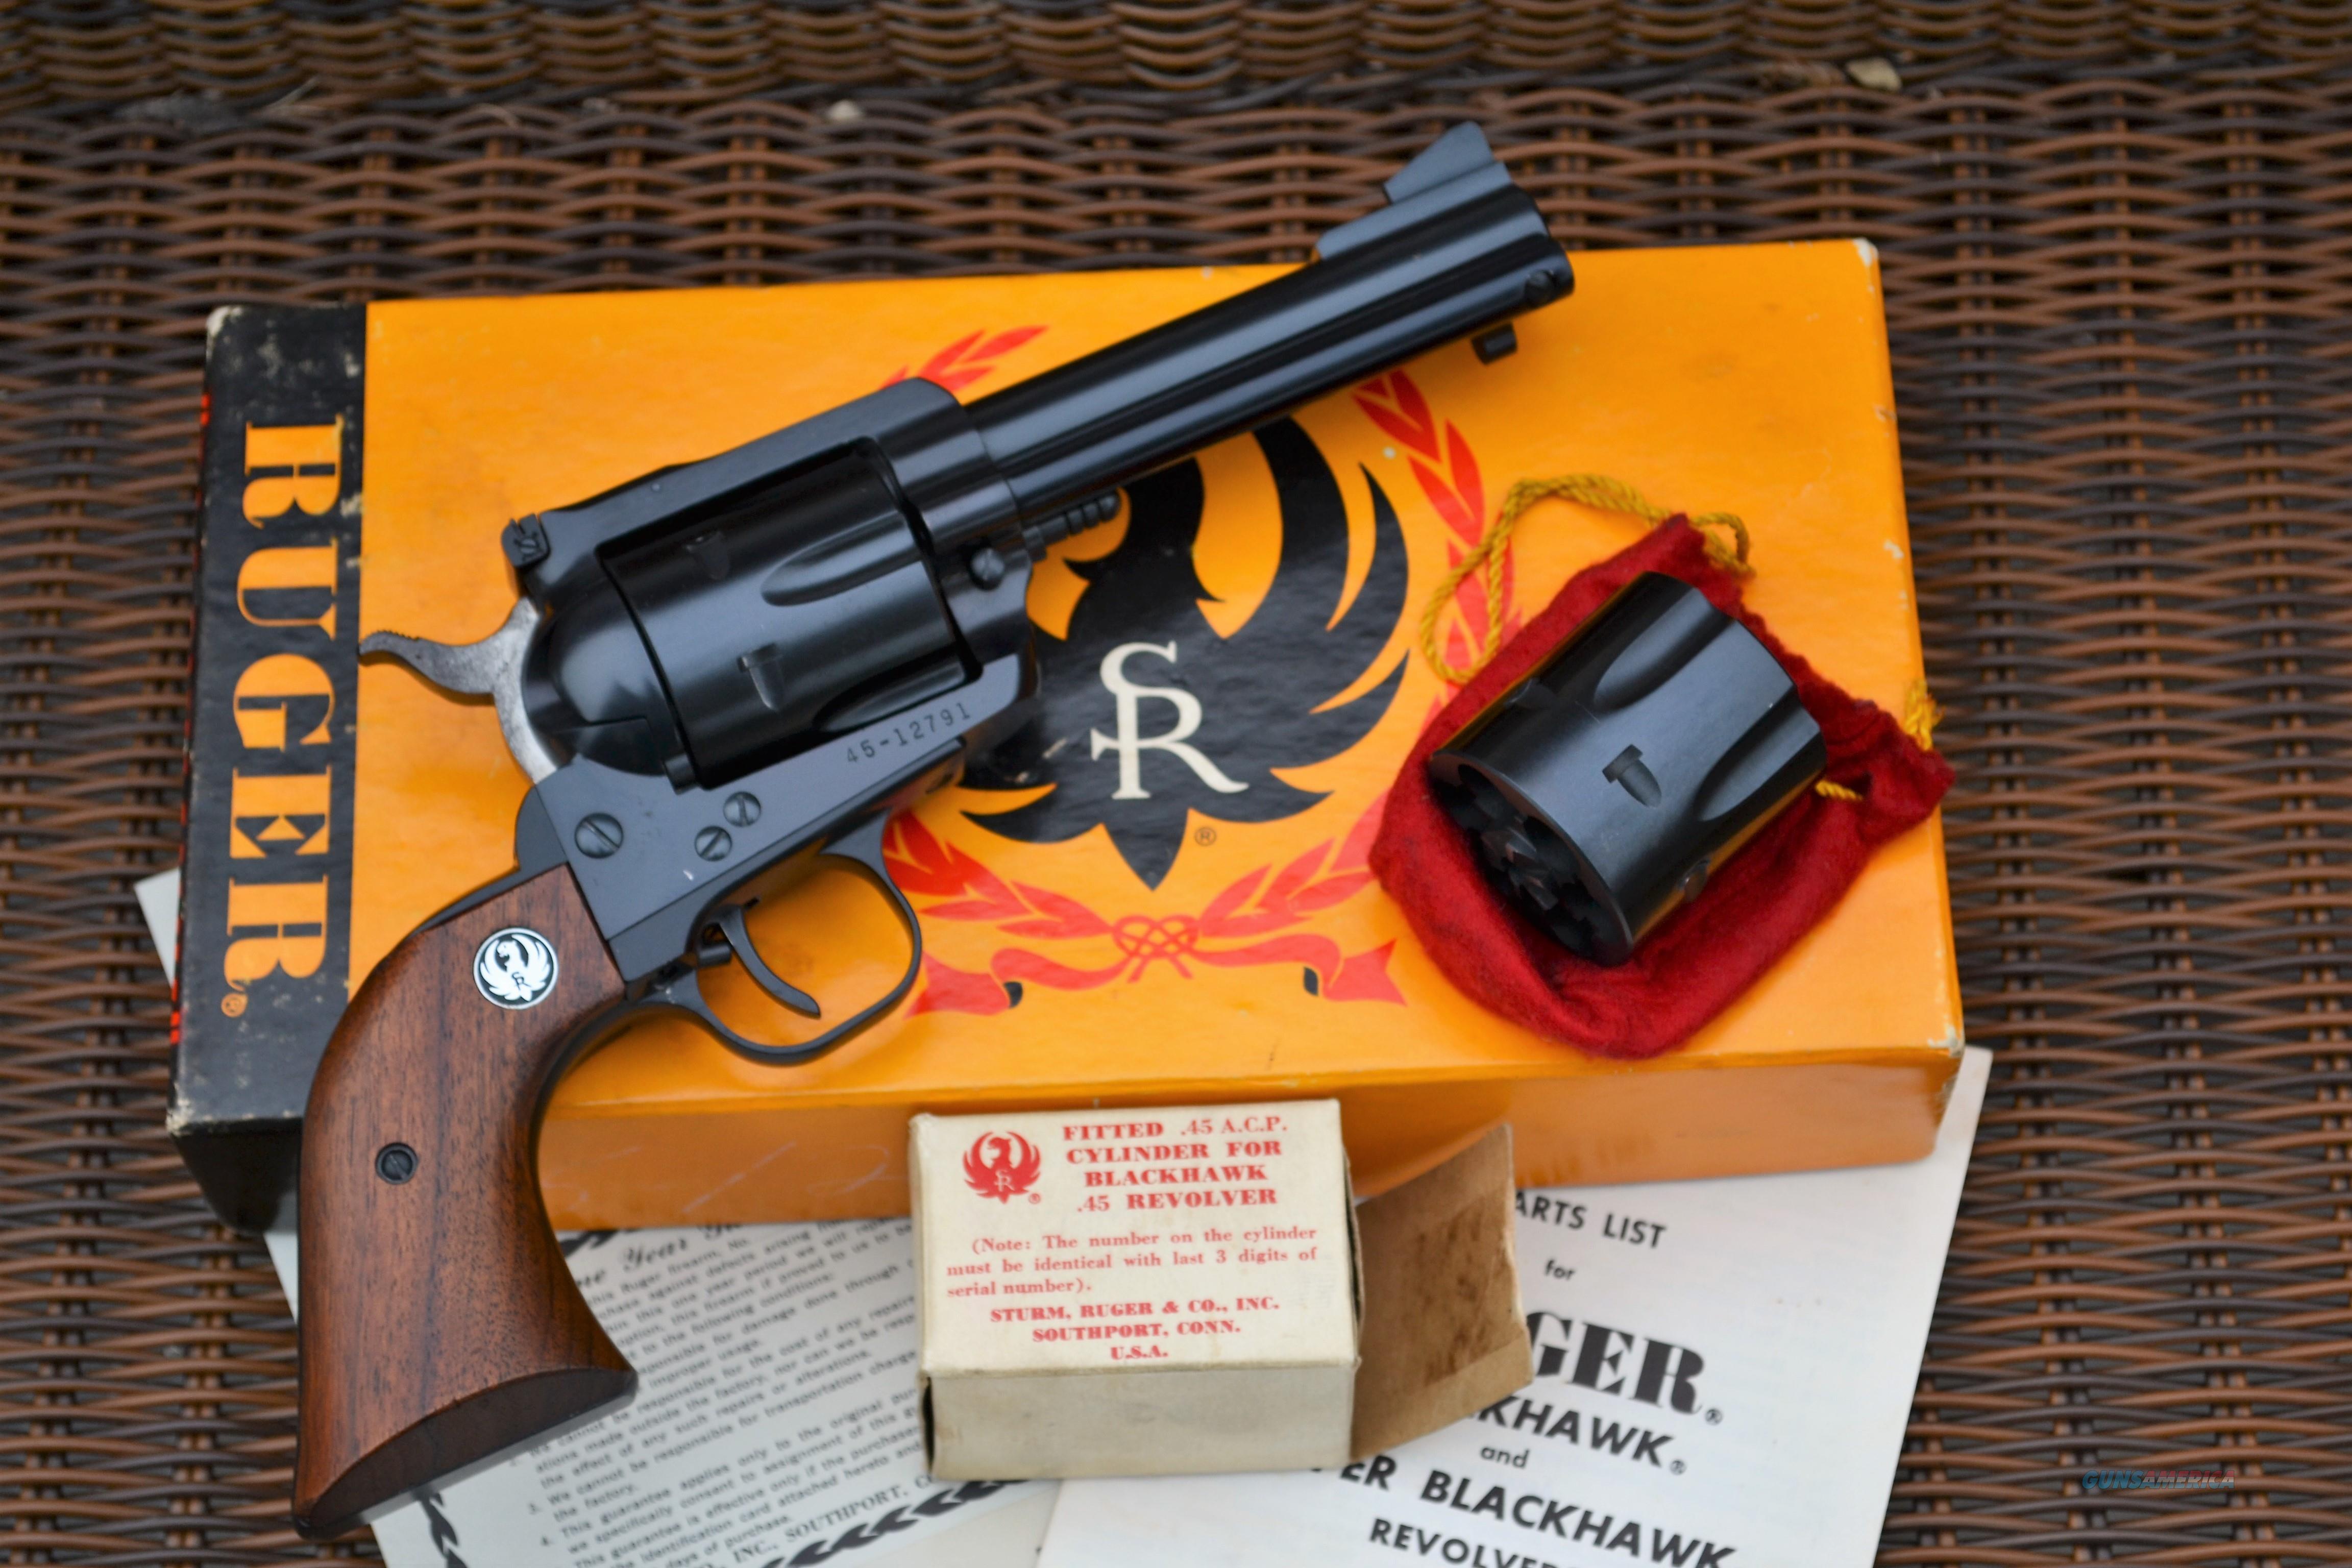 Ruger Blackhawk 45 45 ACP 3 Screw O... for sale at Gunsamerica.com ...